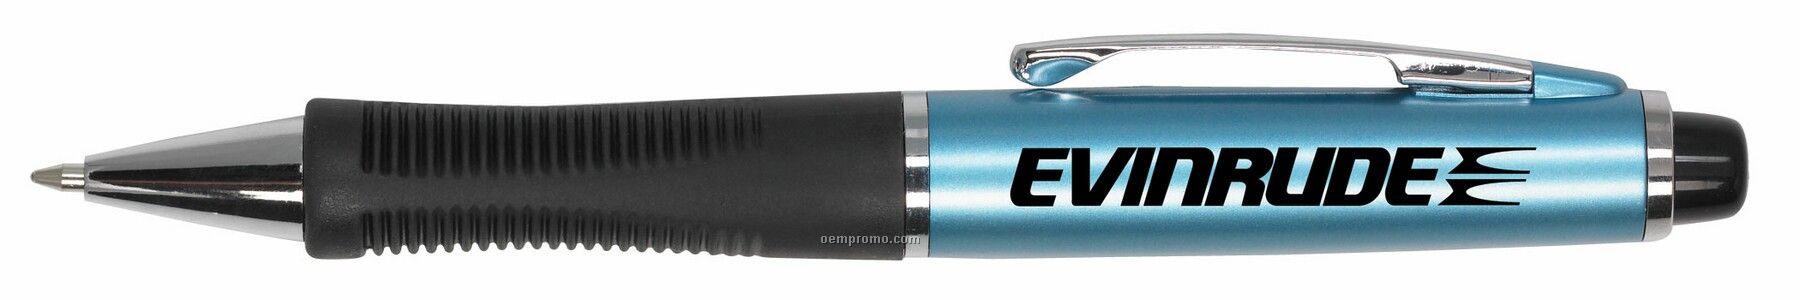 Neptune Ballpoint Pen W/ Metallic Barrel & Ergonomic Grip